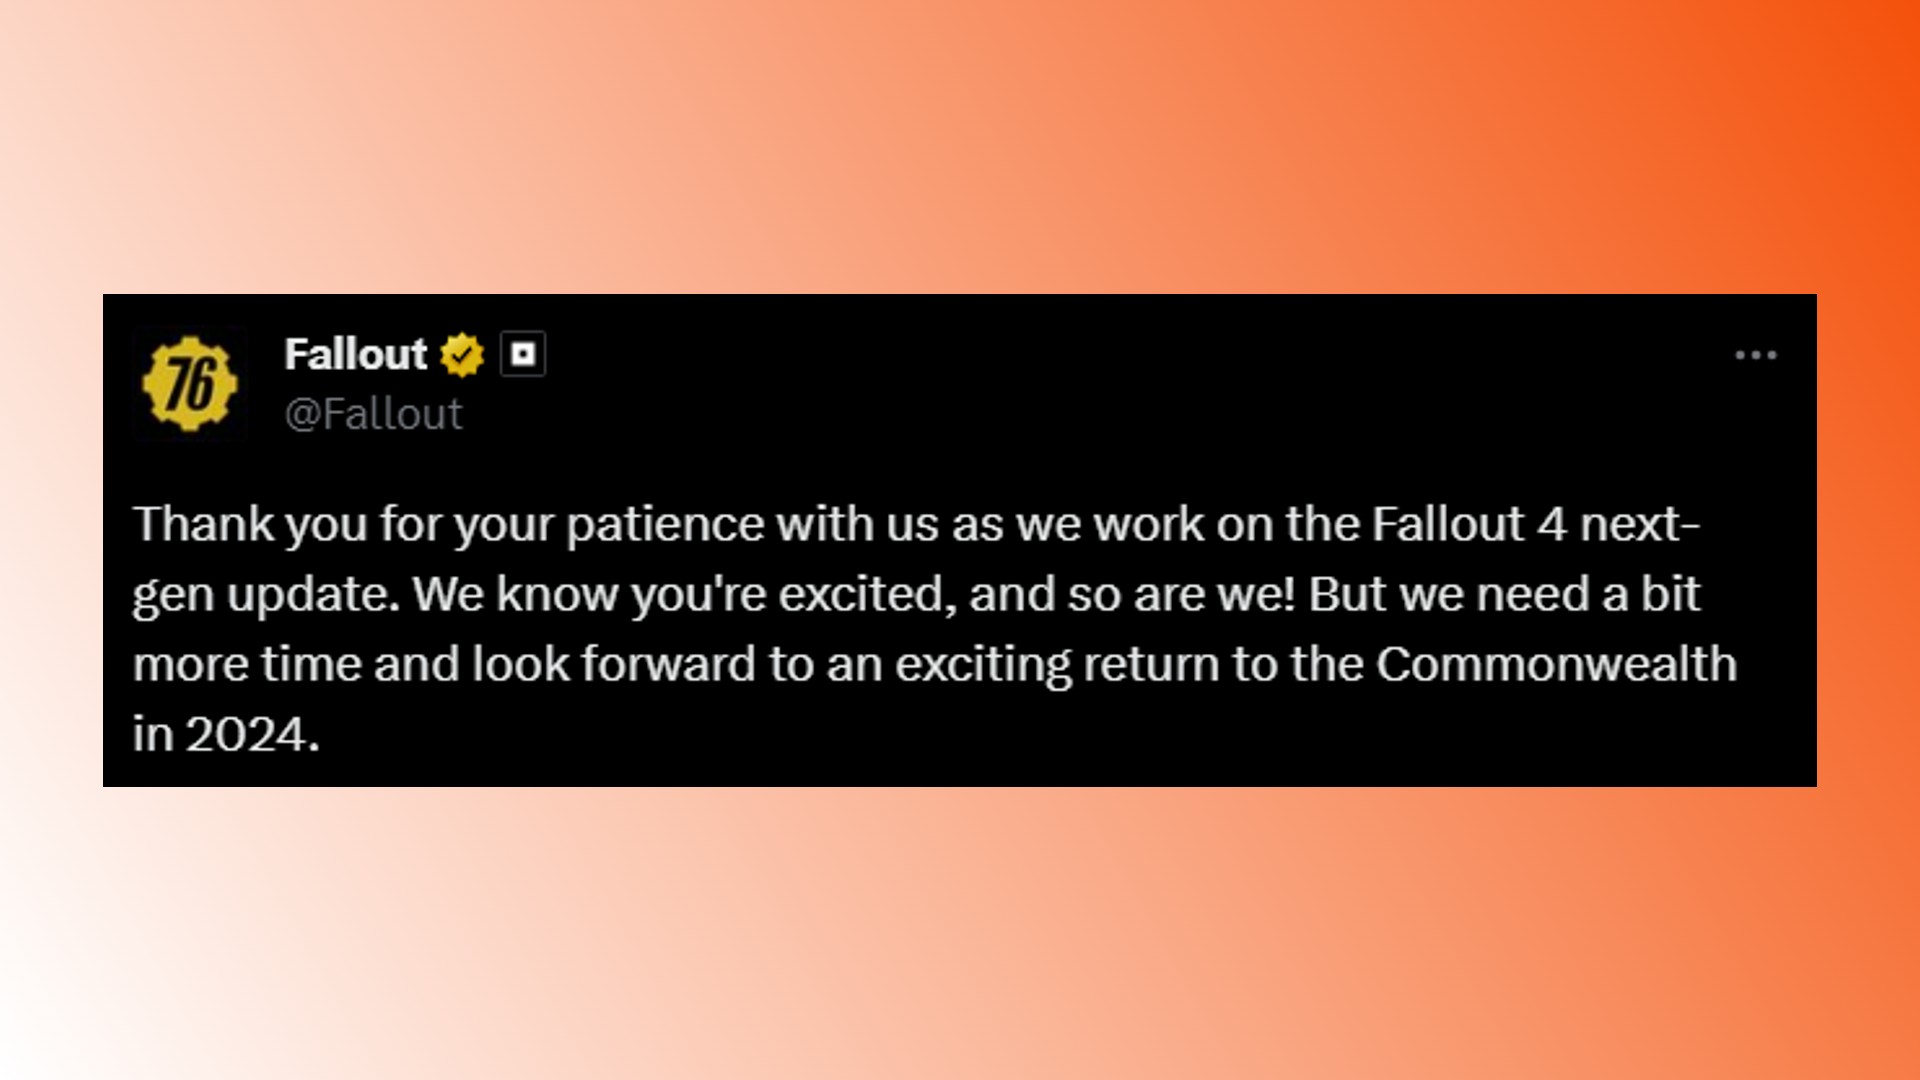 Mise à jour nouvelle génération de Fallout 4 Bethesda : déclaration de Fallout Twitter concernant la mise à jour nouvelle génération de Fallout 4